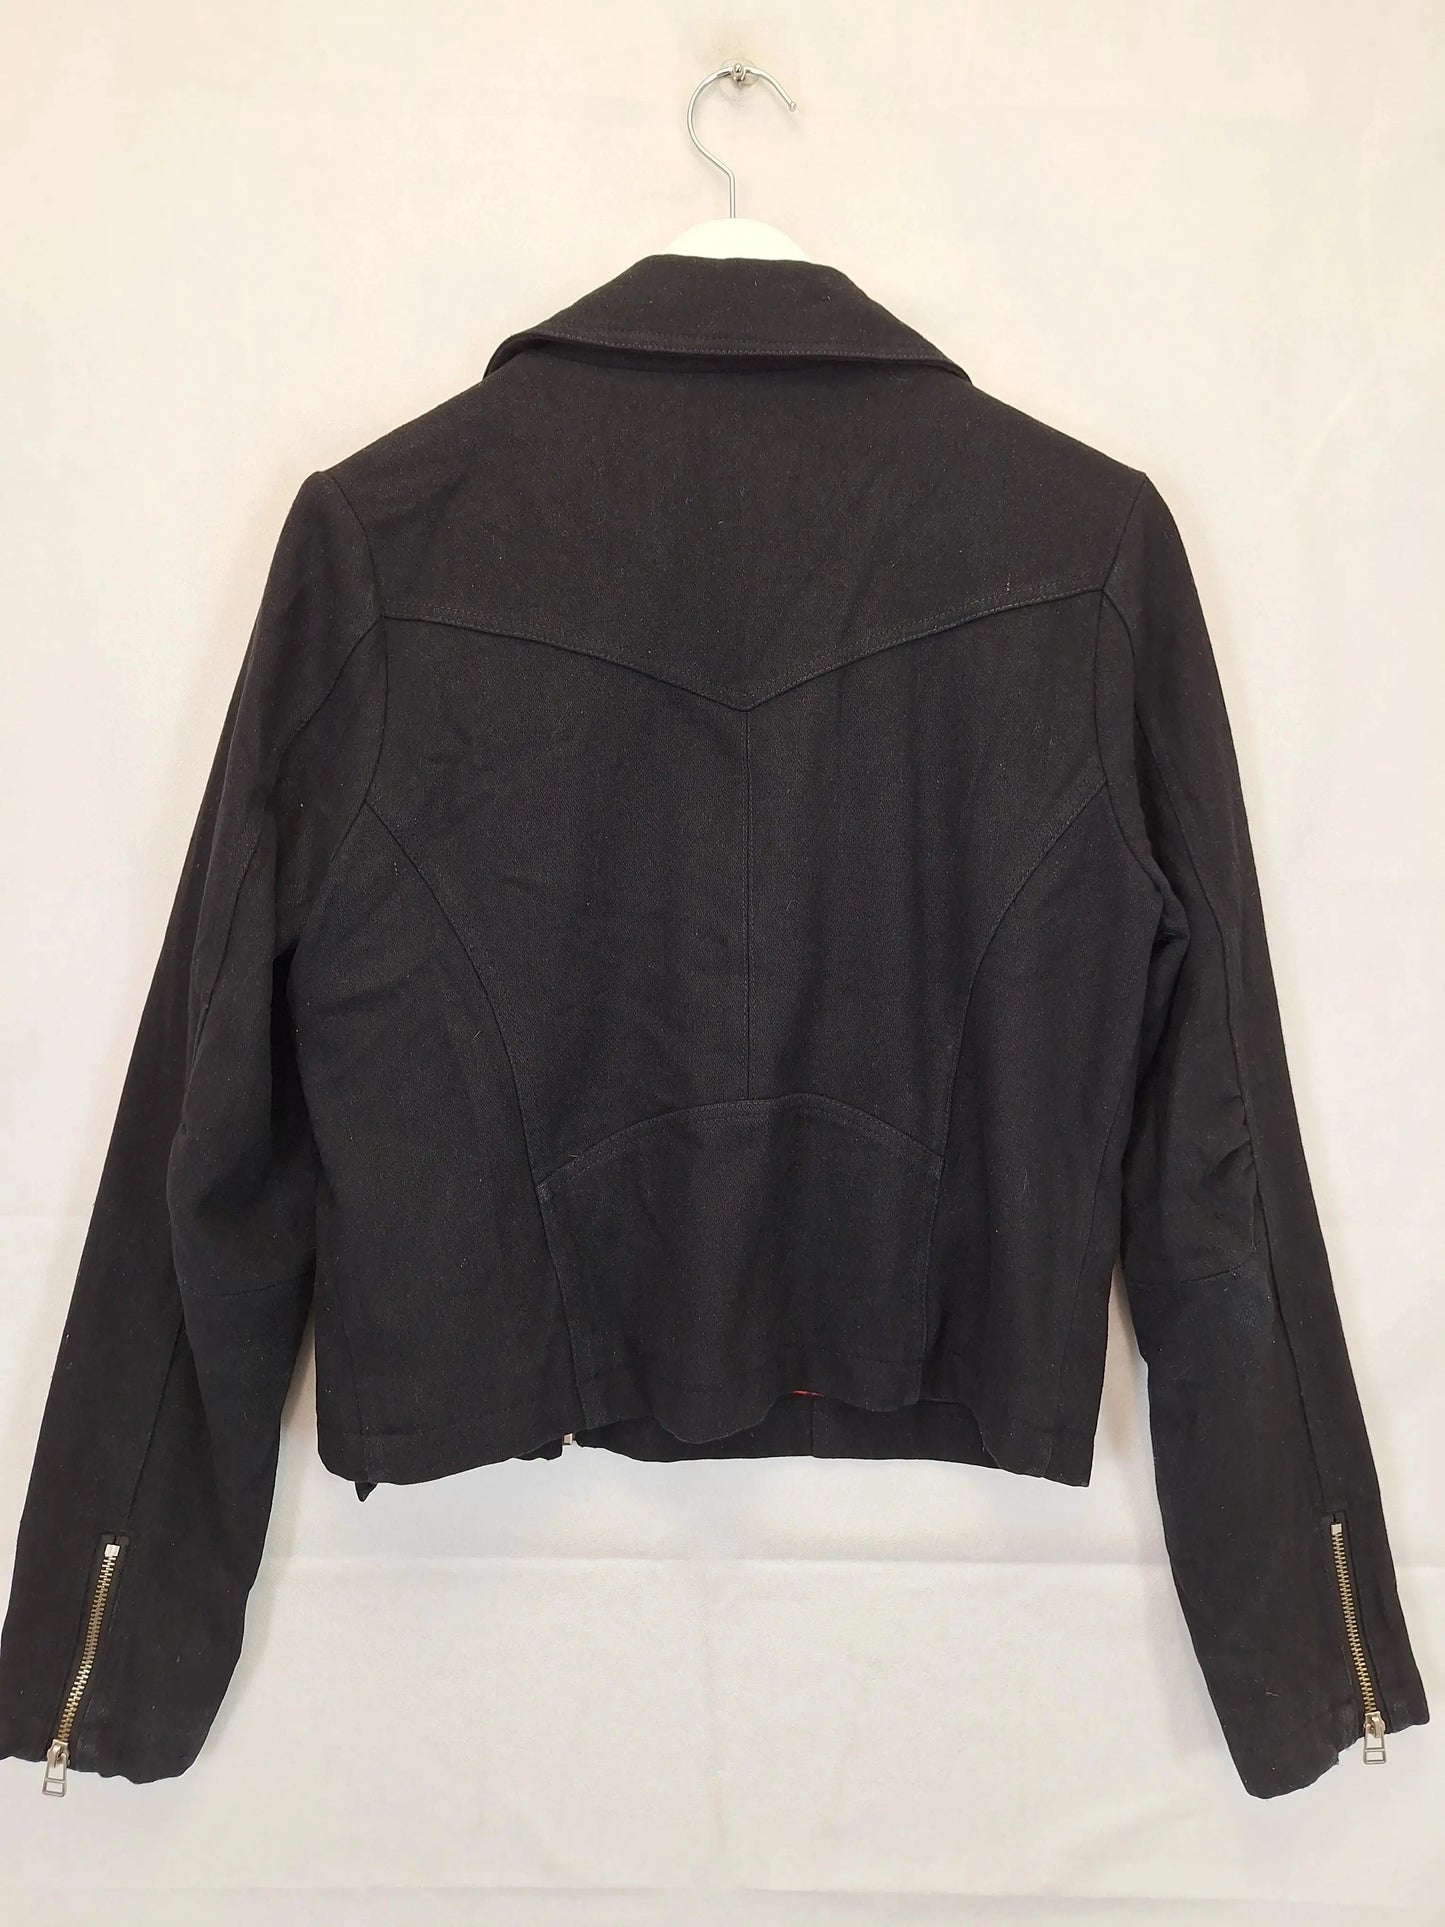 Black Friday Lined Wool Blend Biker Jacket Size 12